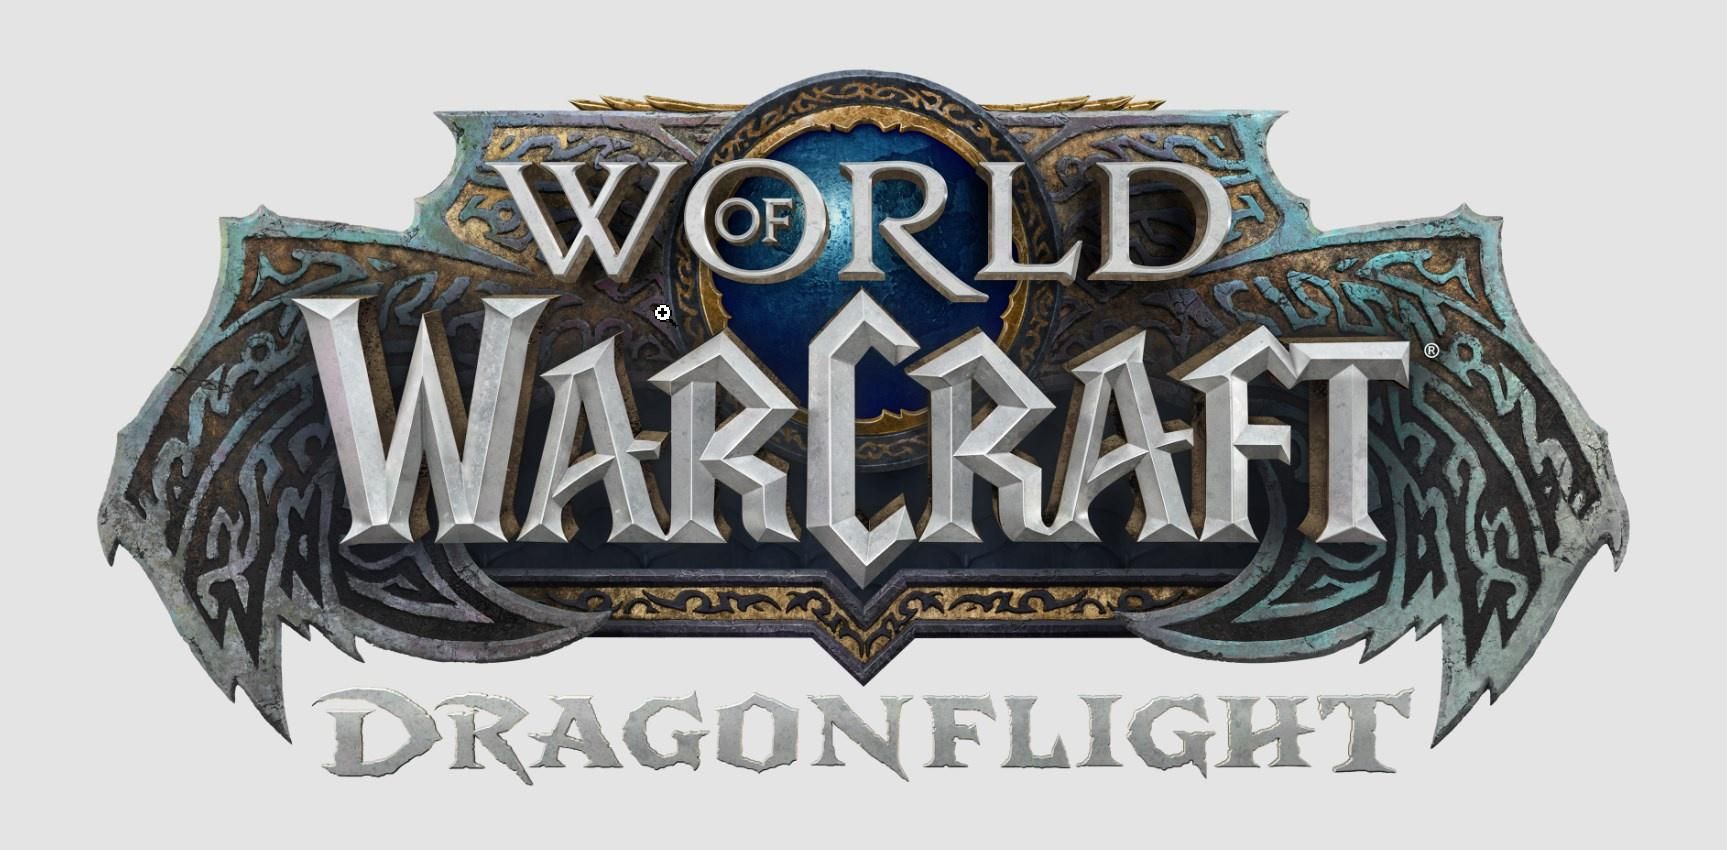 Утечка: возможный логотип дополнения Dragonflight для World of Warcraft